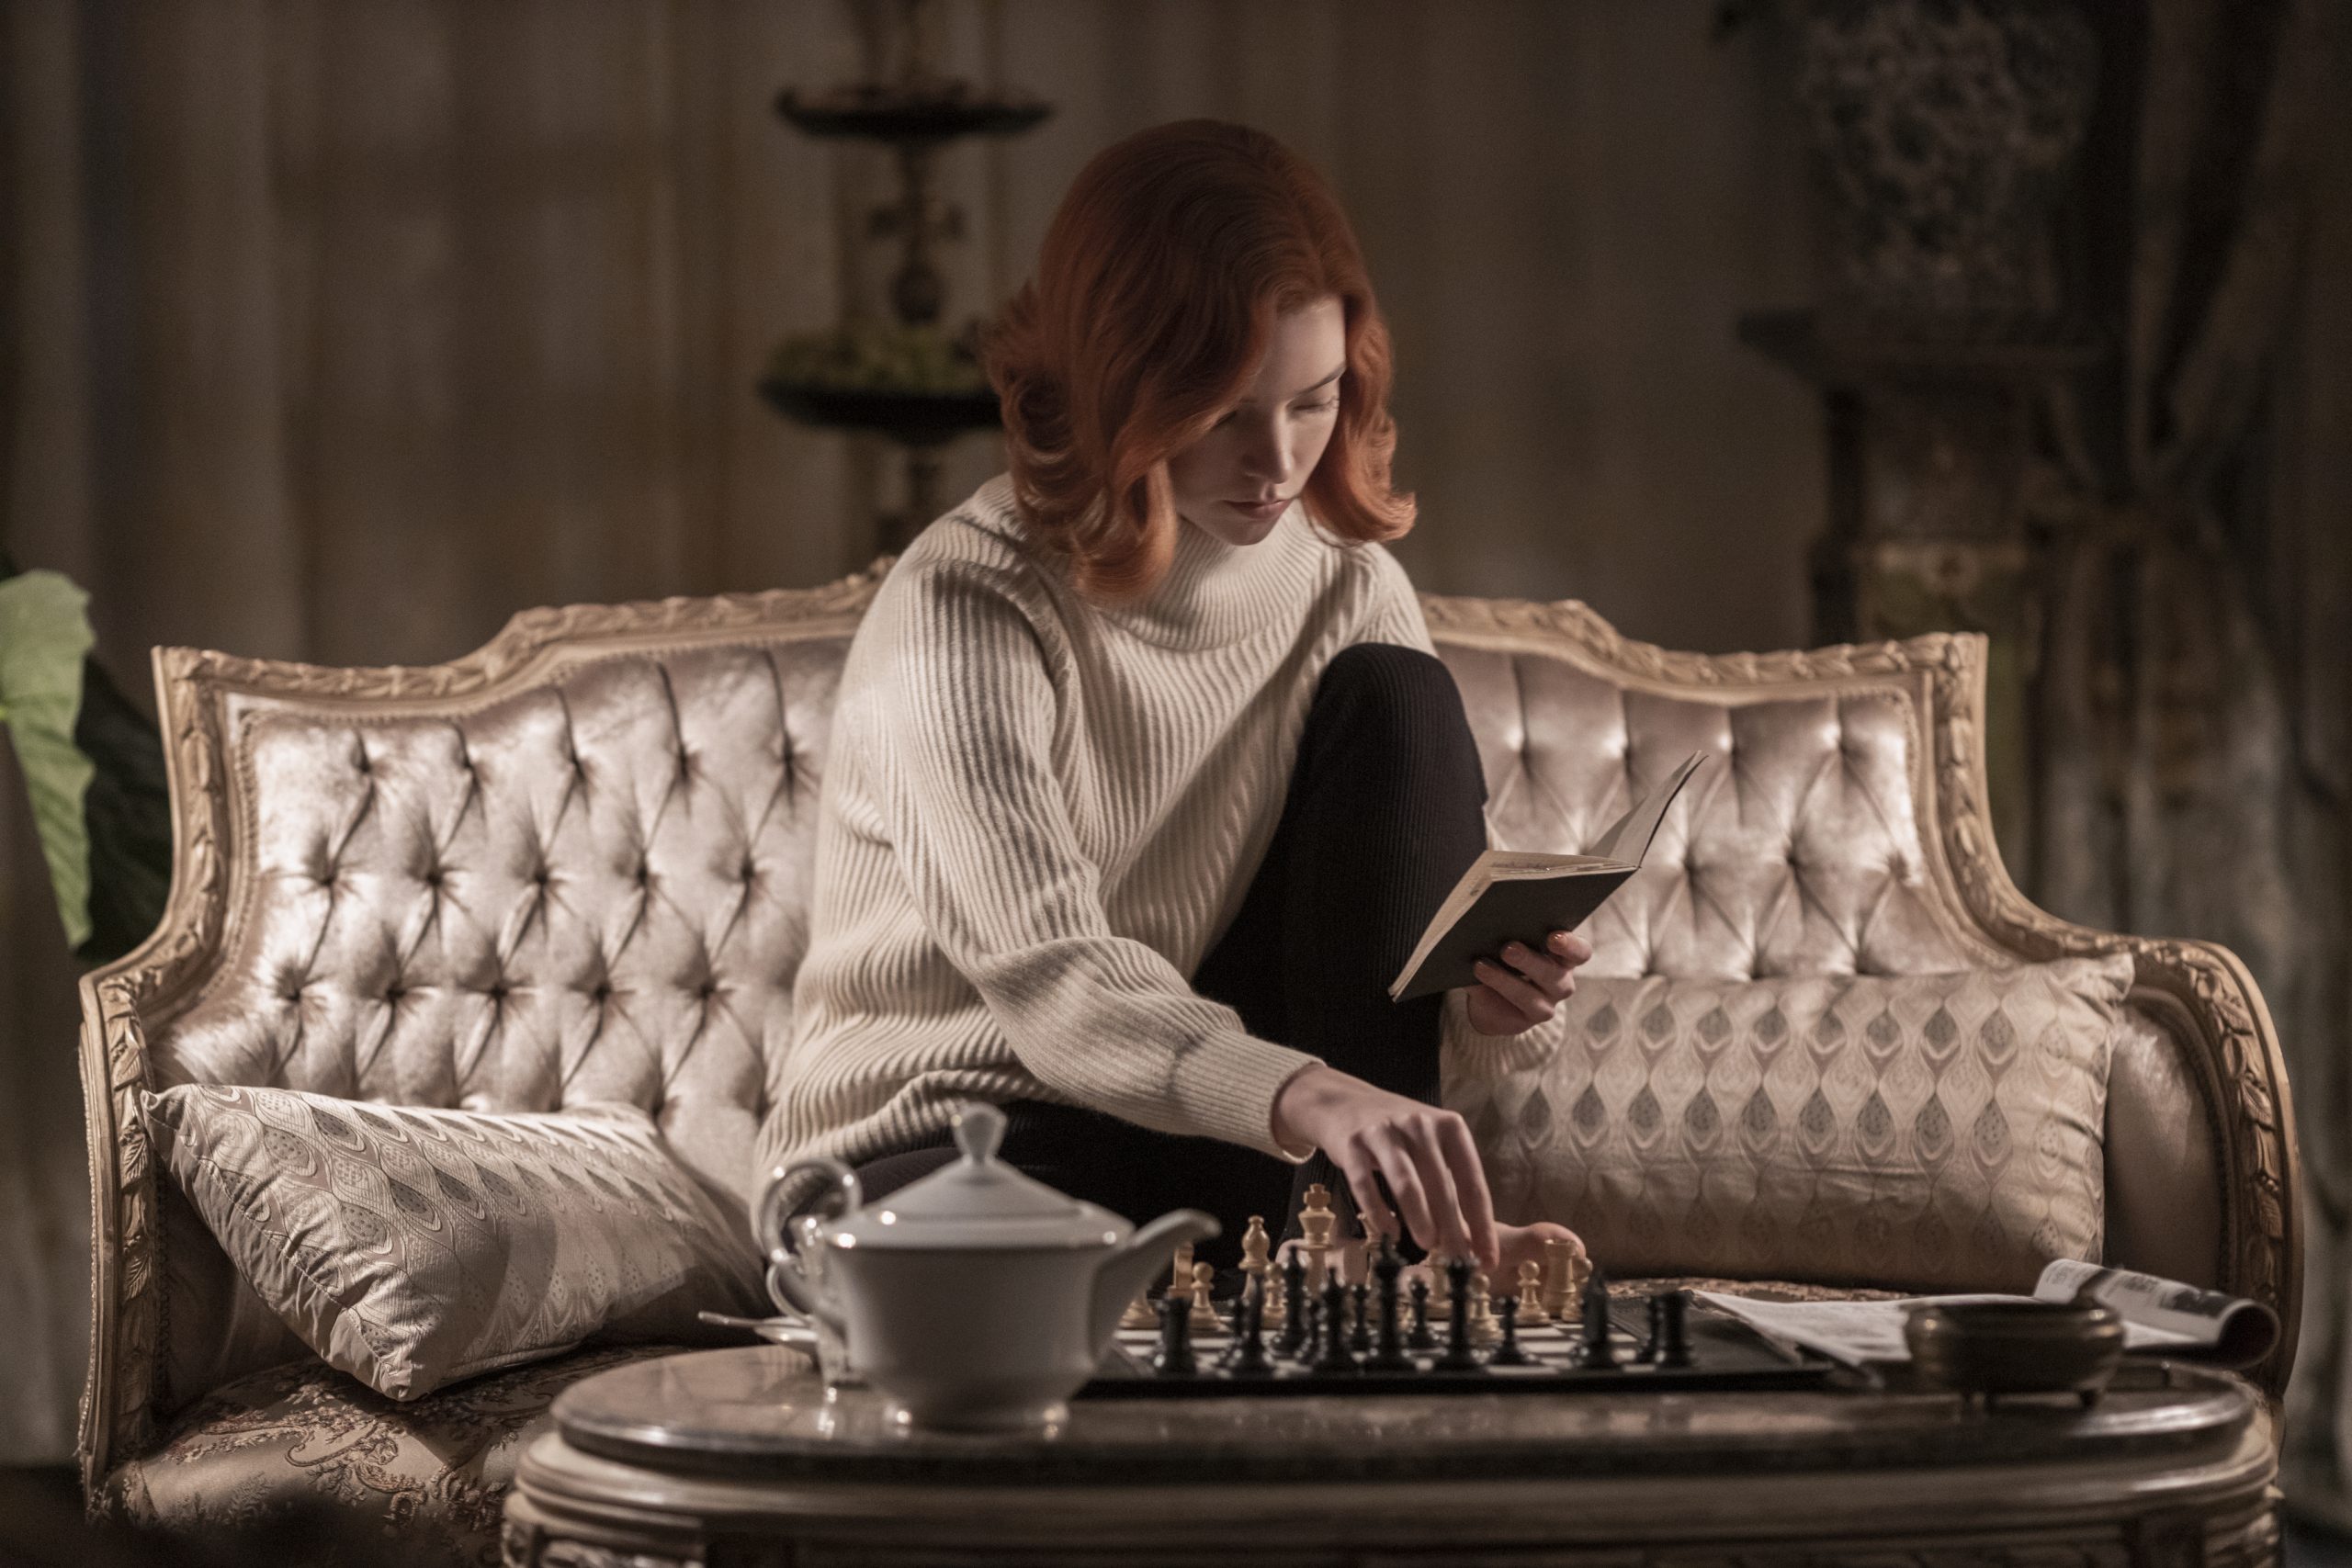 Con razón: Las ventas de tableros de ajedrez aumentaron gracias a 'The Queen's Gambit'